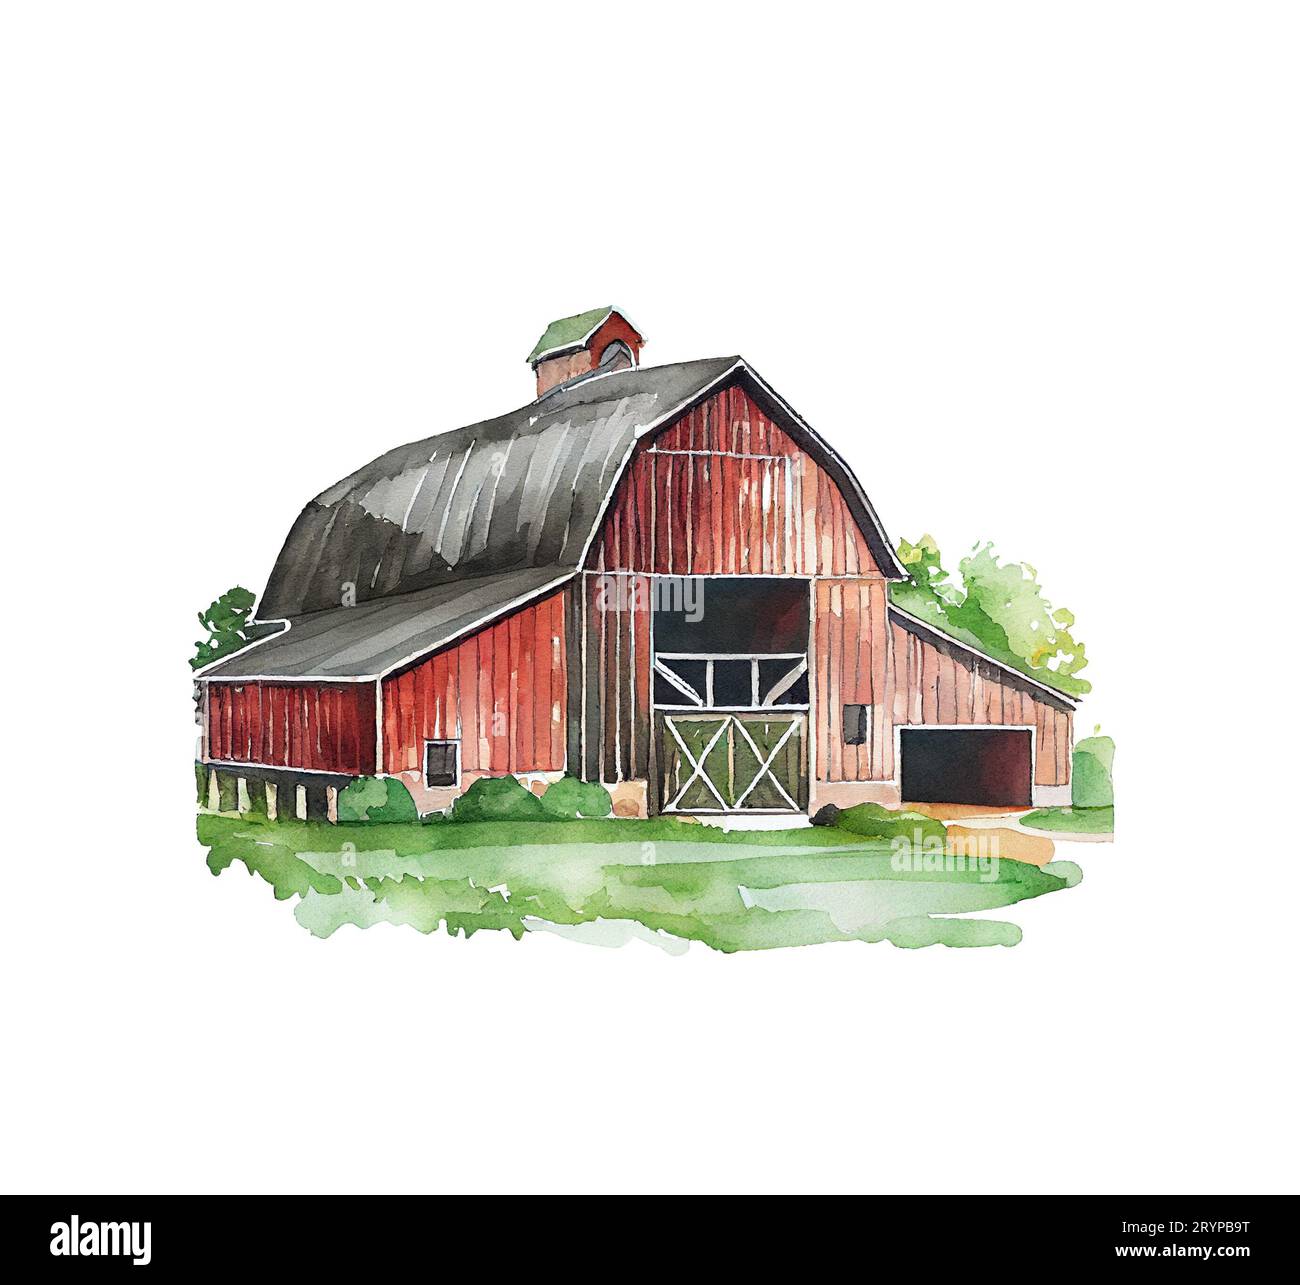 Maison de ferme rouge grange. Aquarelle illustration paysage blanc fond isolé Banque D'Images